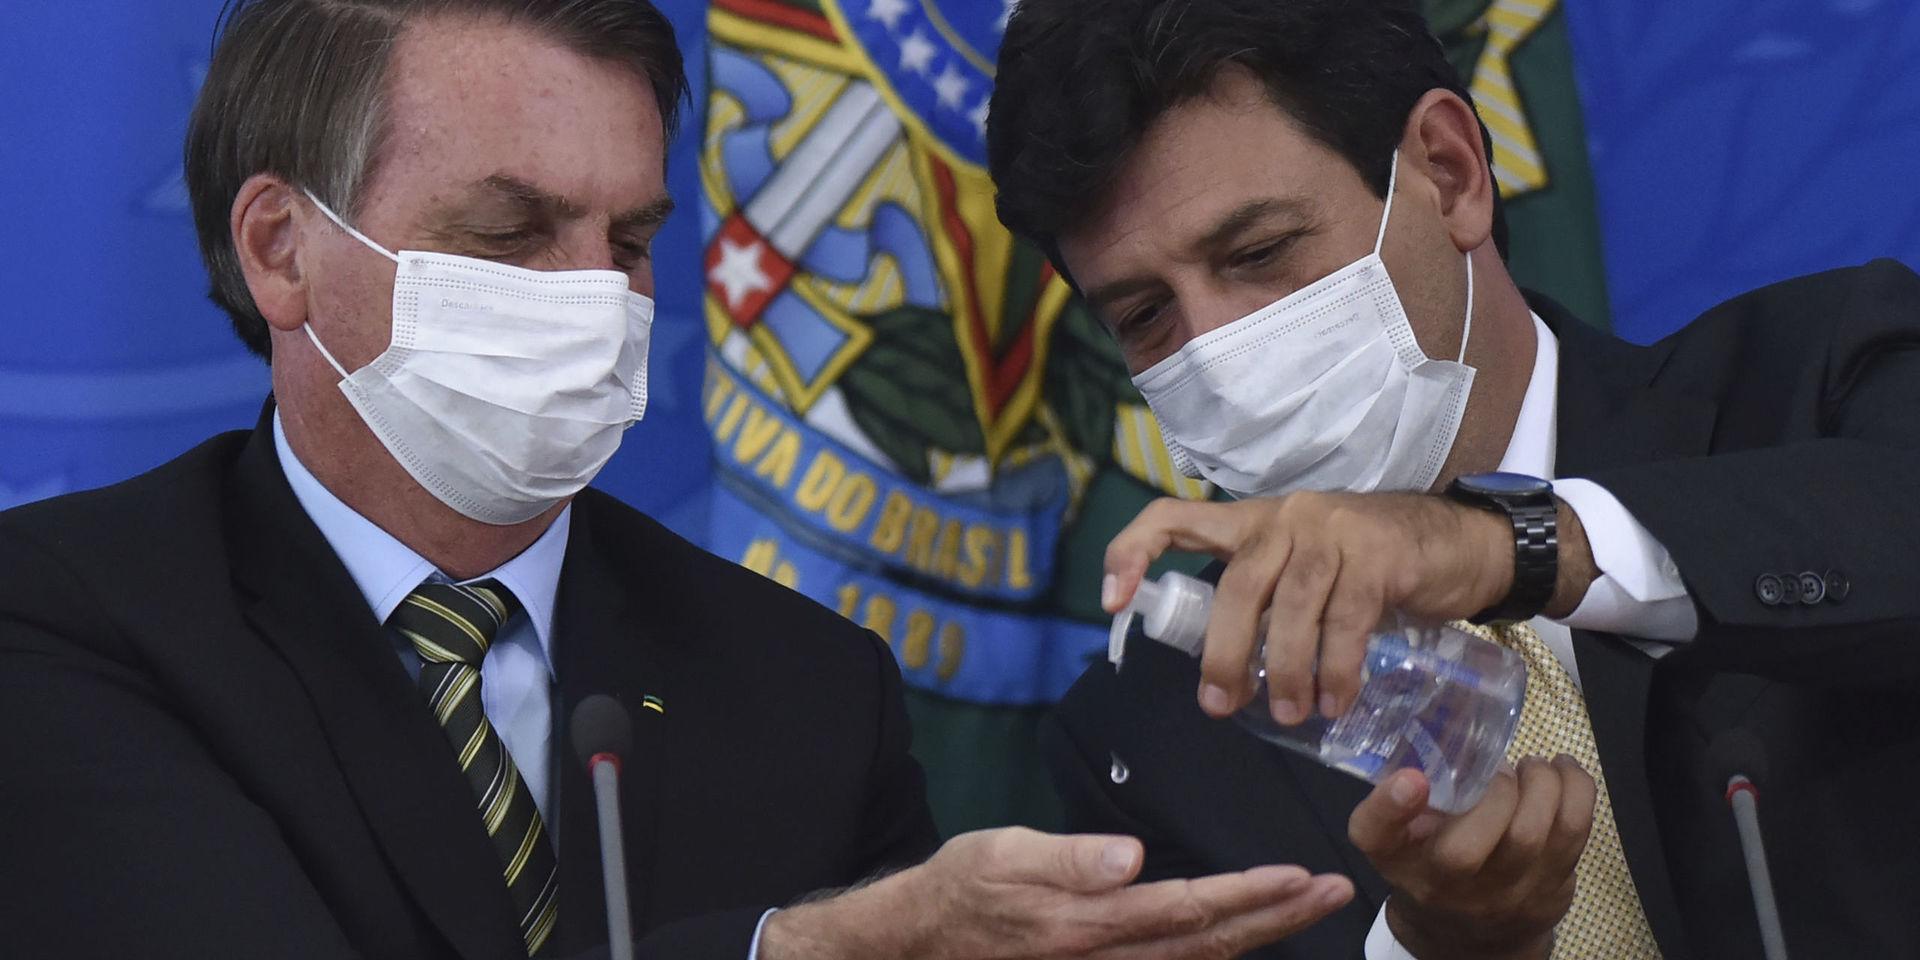 Brasiliens hälsominister Luiz Henrique Mandetta, till höger, trycker ut handsprit i sin chefs, president Jair Bolsonaros, händer under en presskonferens vid presidentpalatset i Brasilia den 18 mars. 